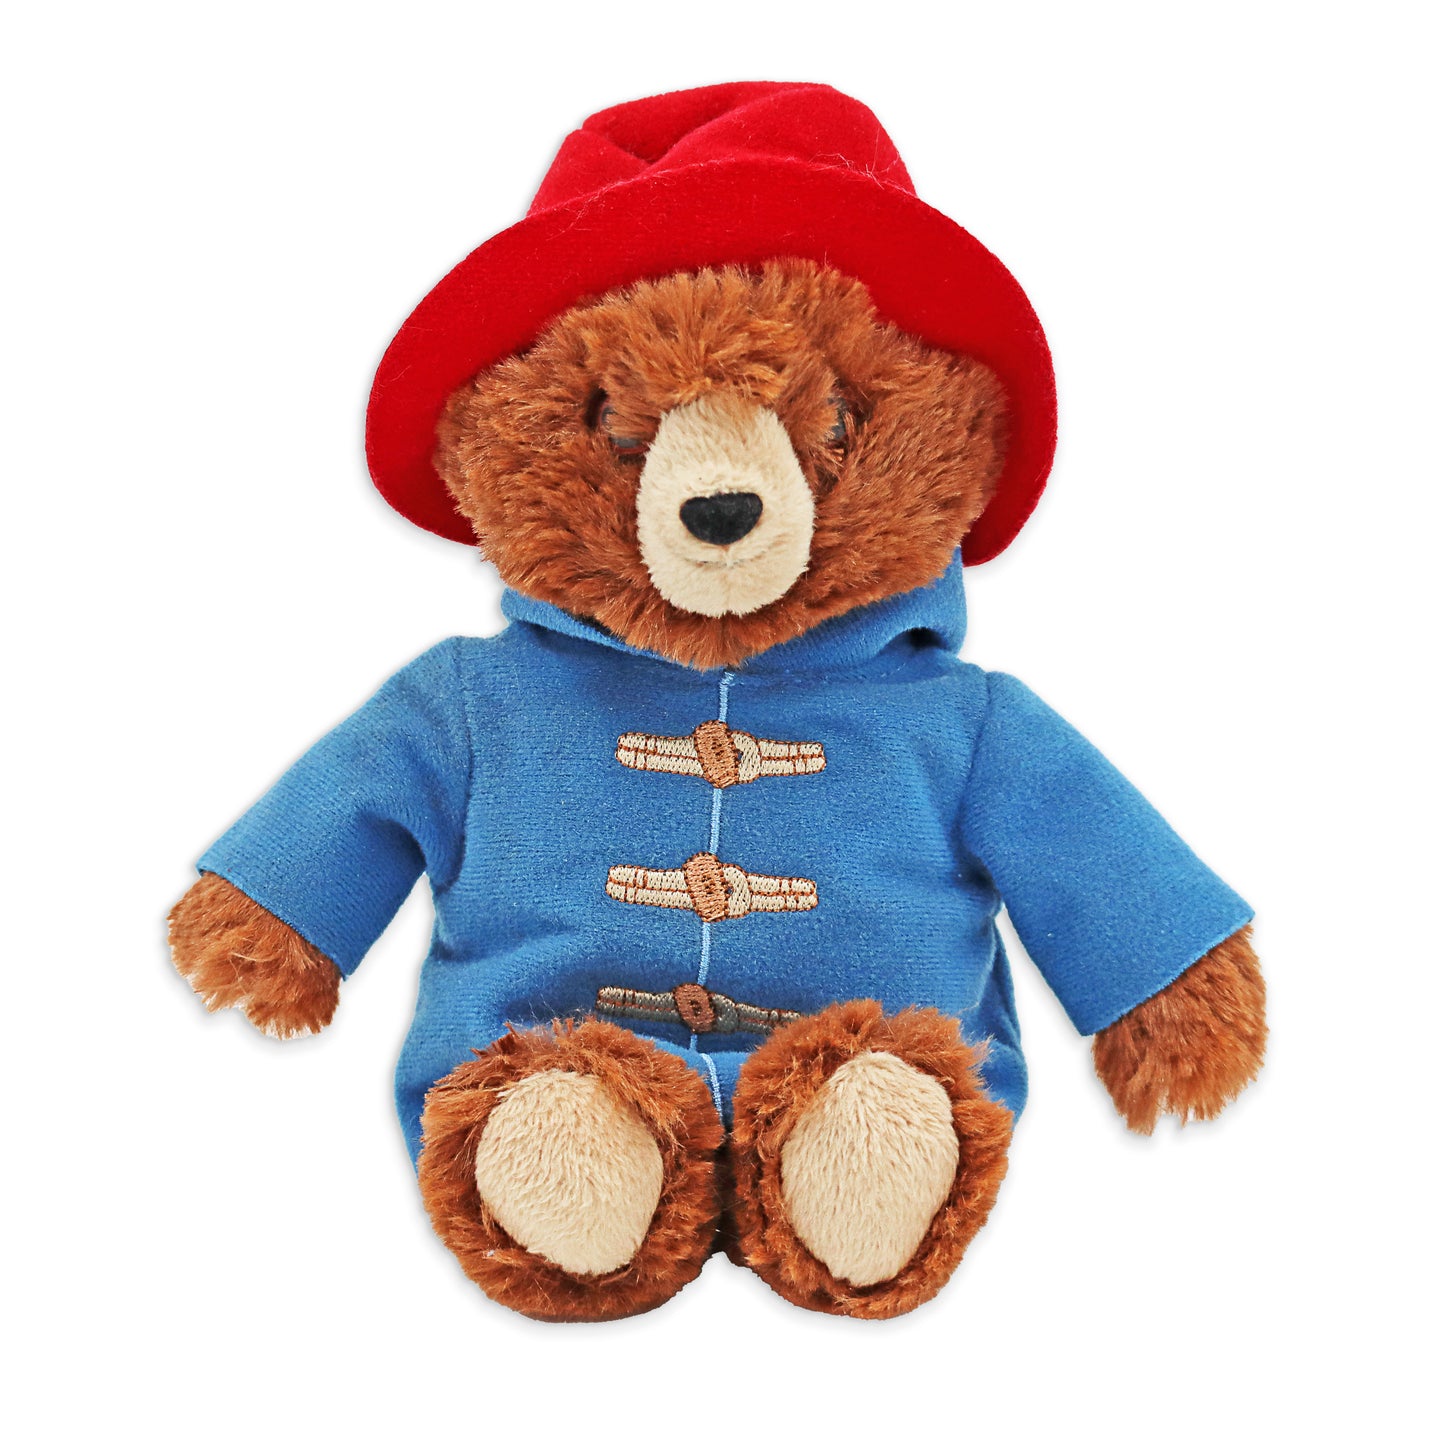 Paddington Bear Movie Edition Teddy Bear